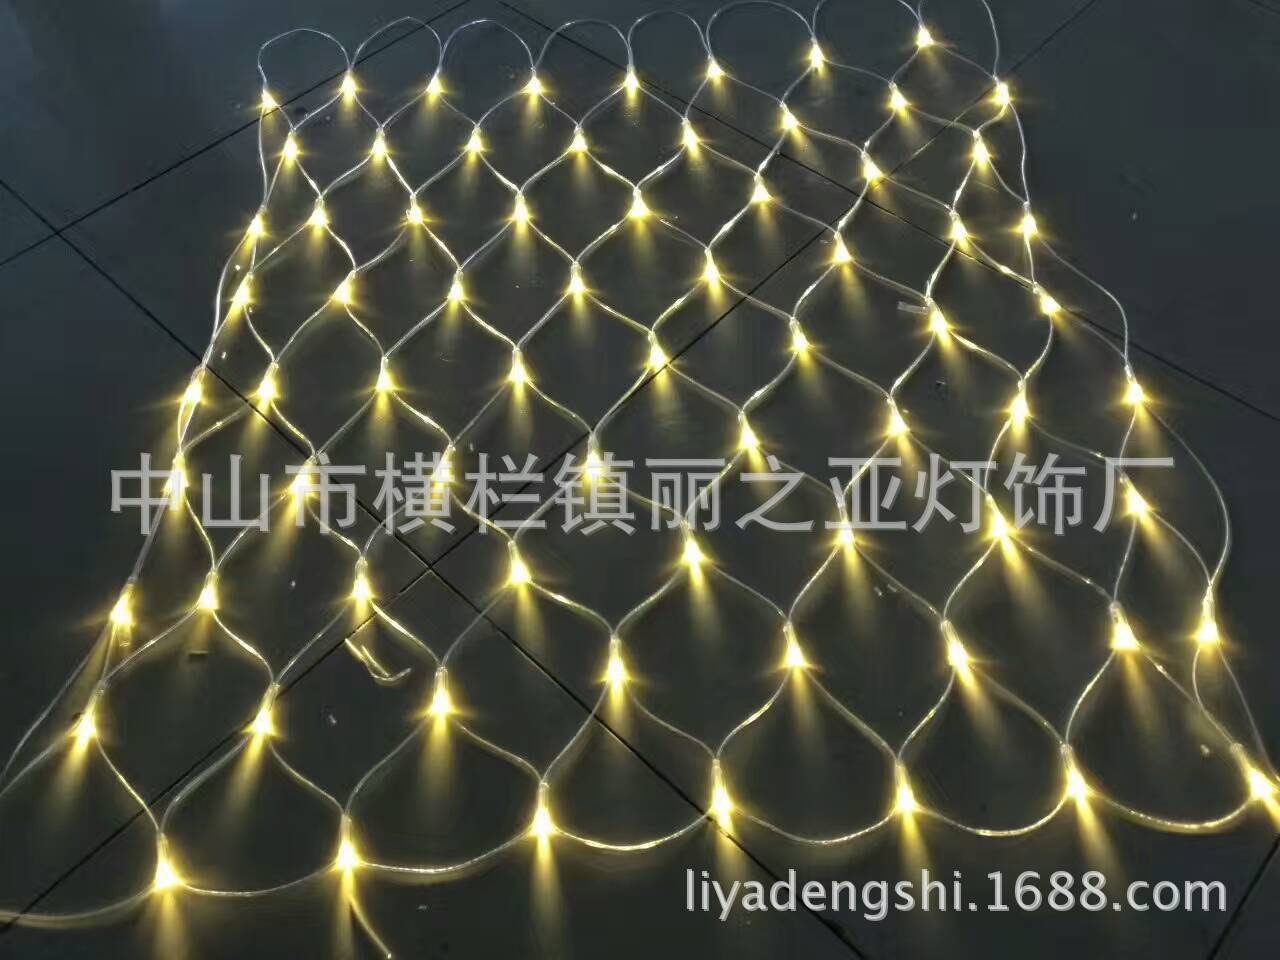 厂家直销批发各类网格形状装饰灯 led防水网灯 1.5*1.5网|ru